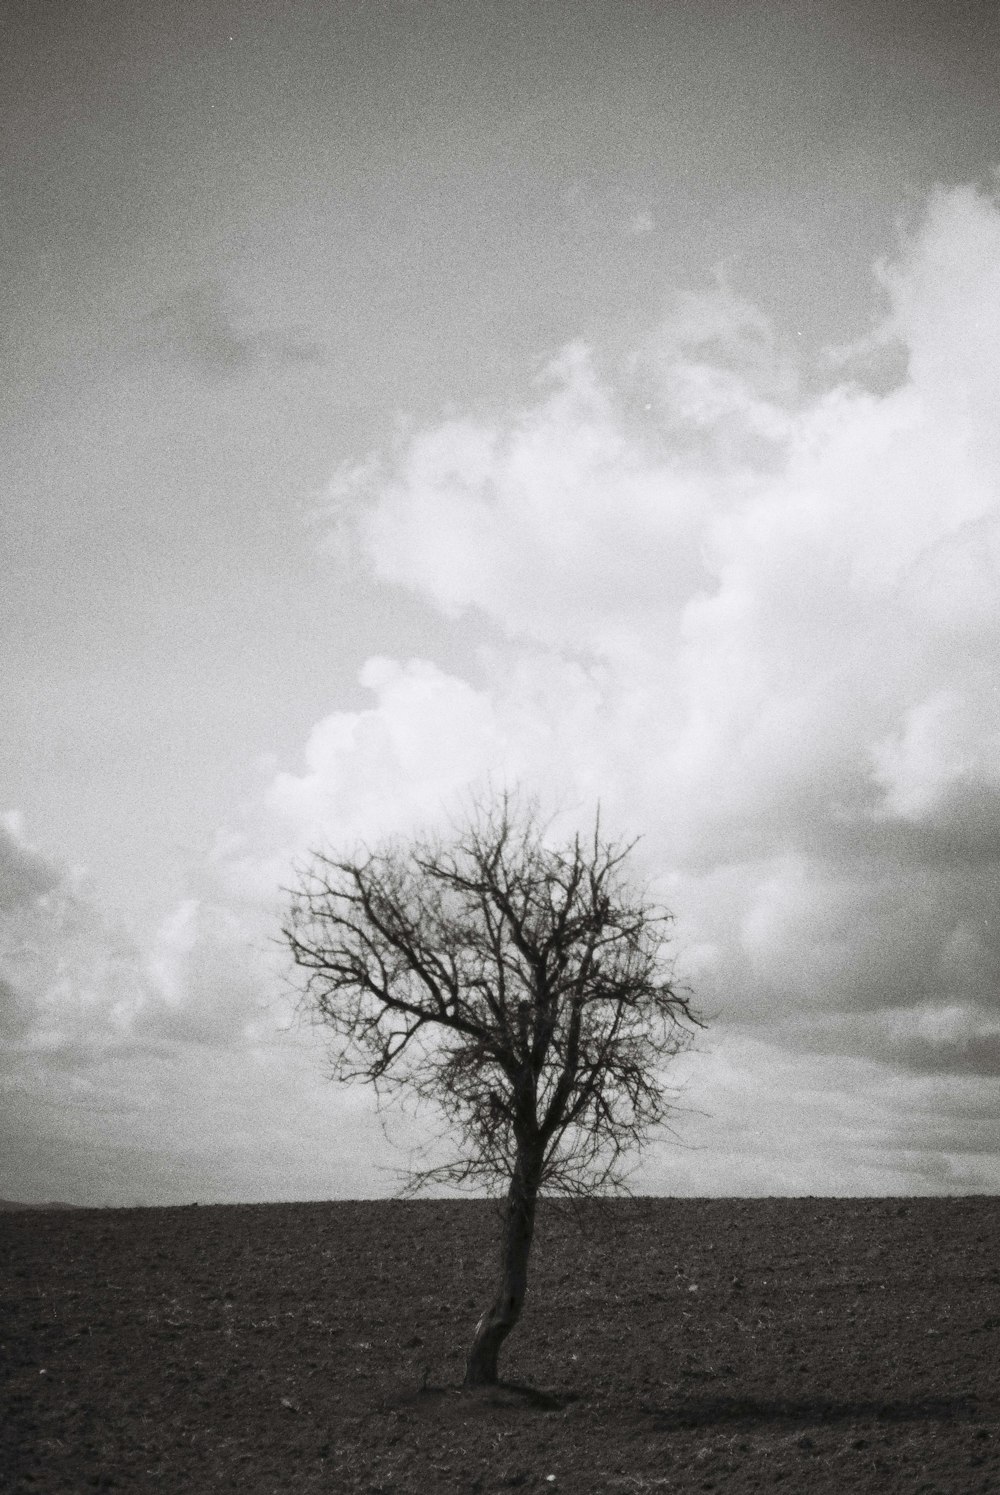 a lone tree stands alone in a barren field